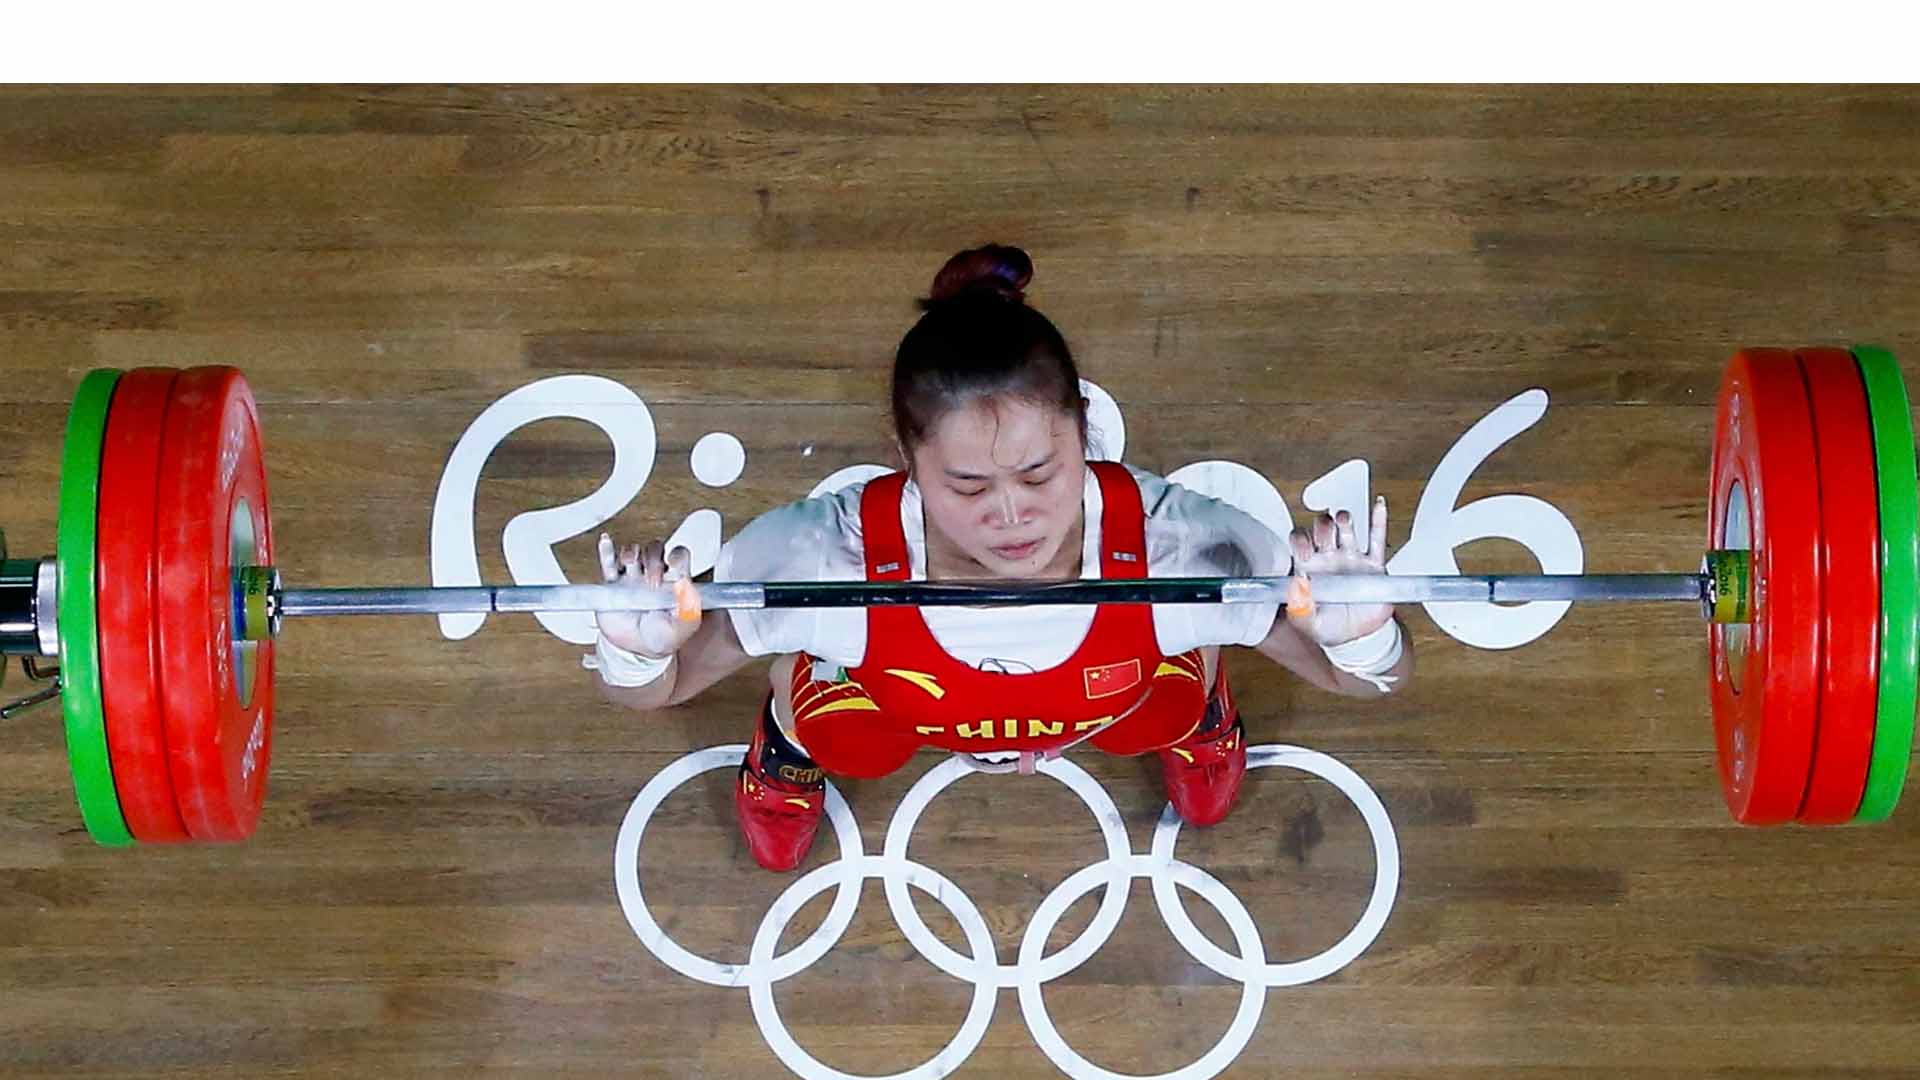 La representante del país asiático logró alzar un total de 262 kilos para superar, por un kilo, la marca impuesta por Lin Tzu-Chi en 2014